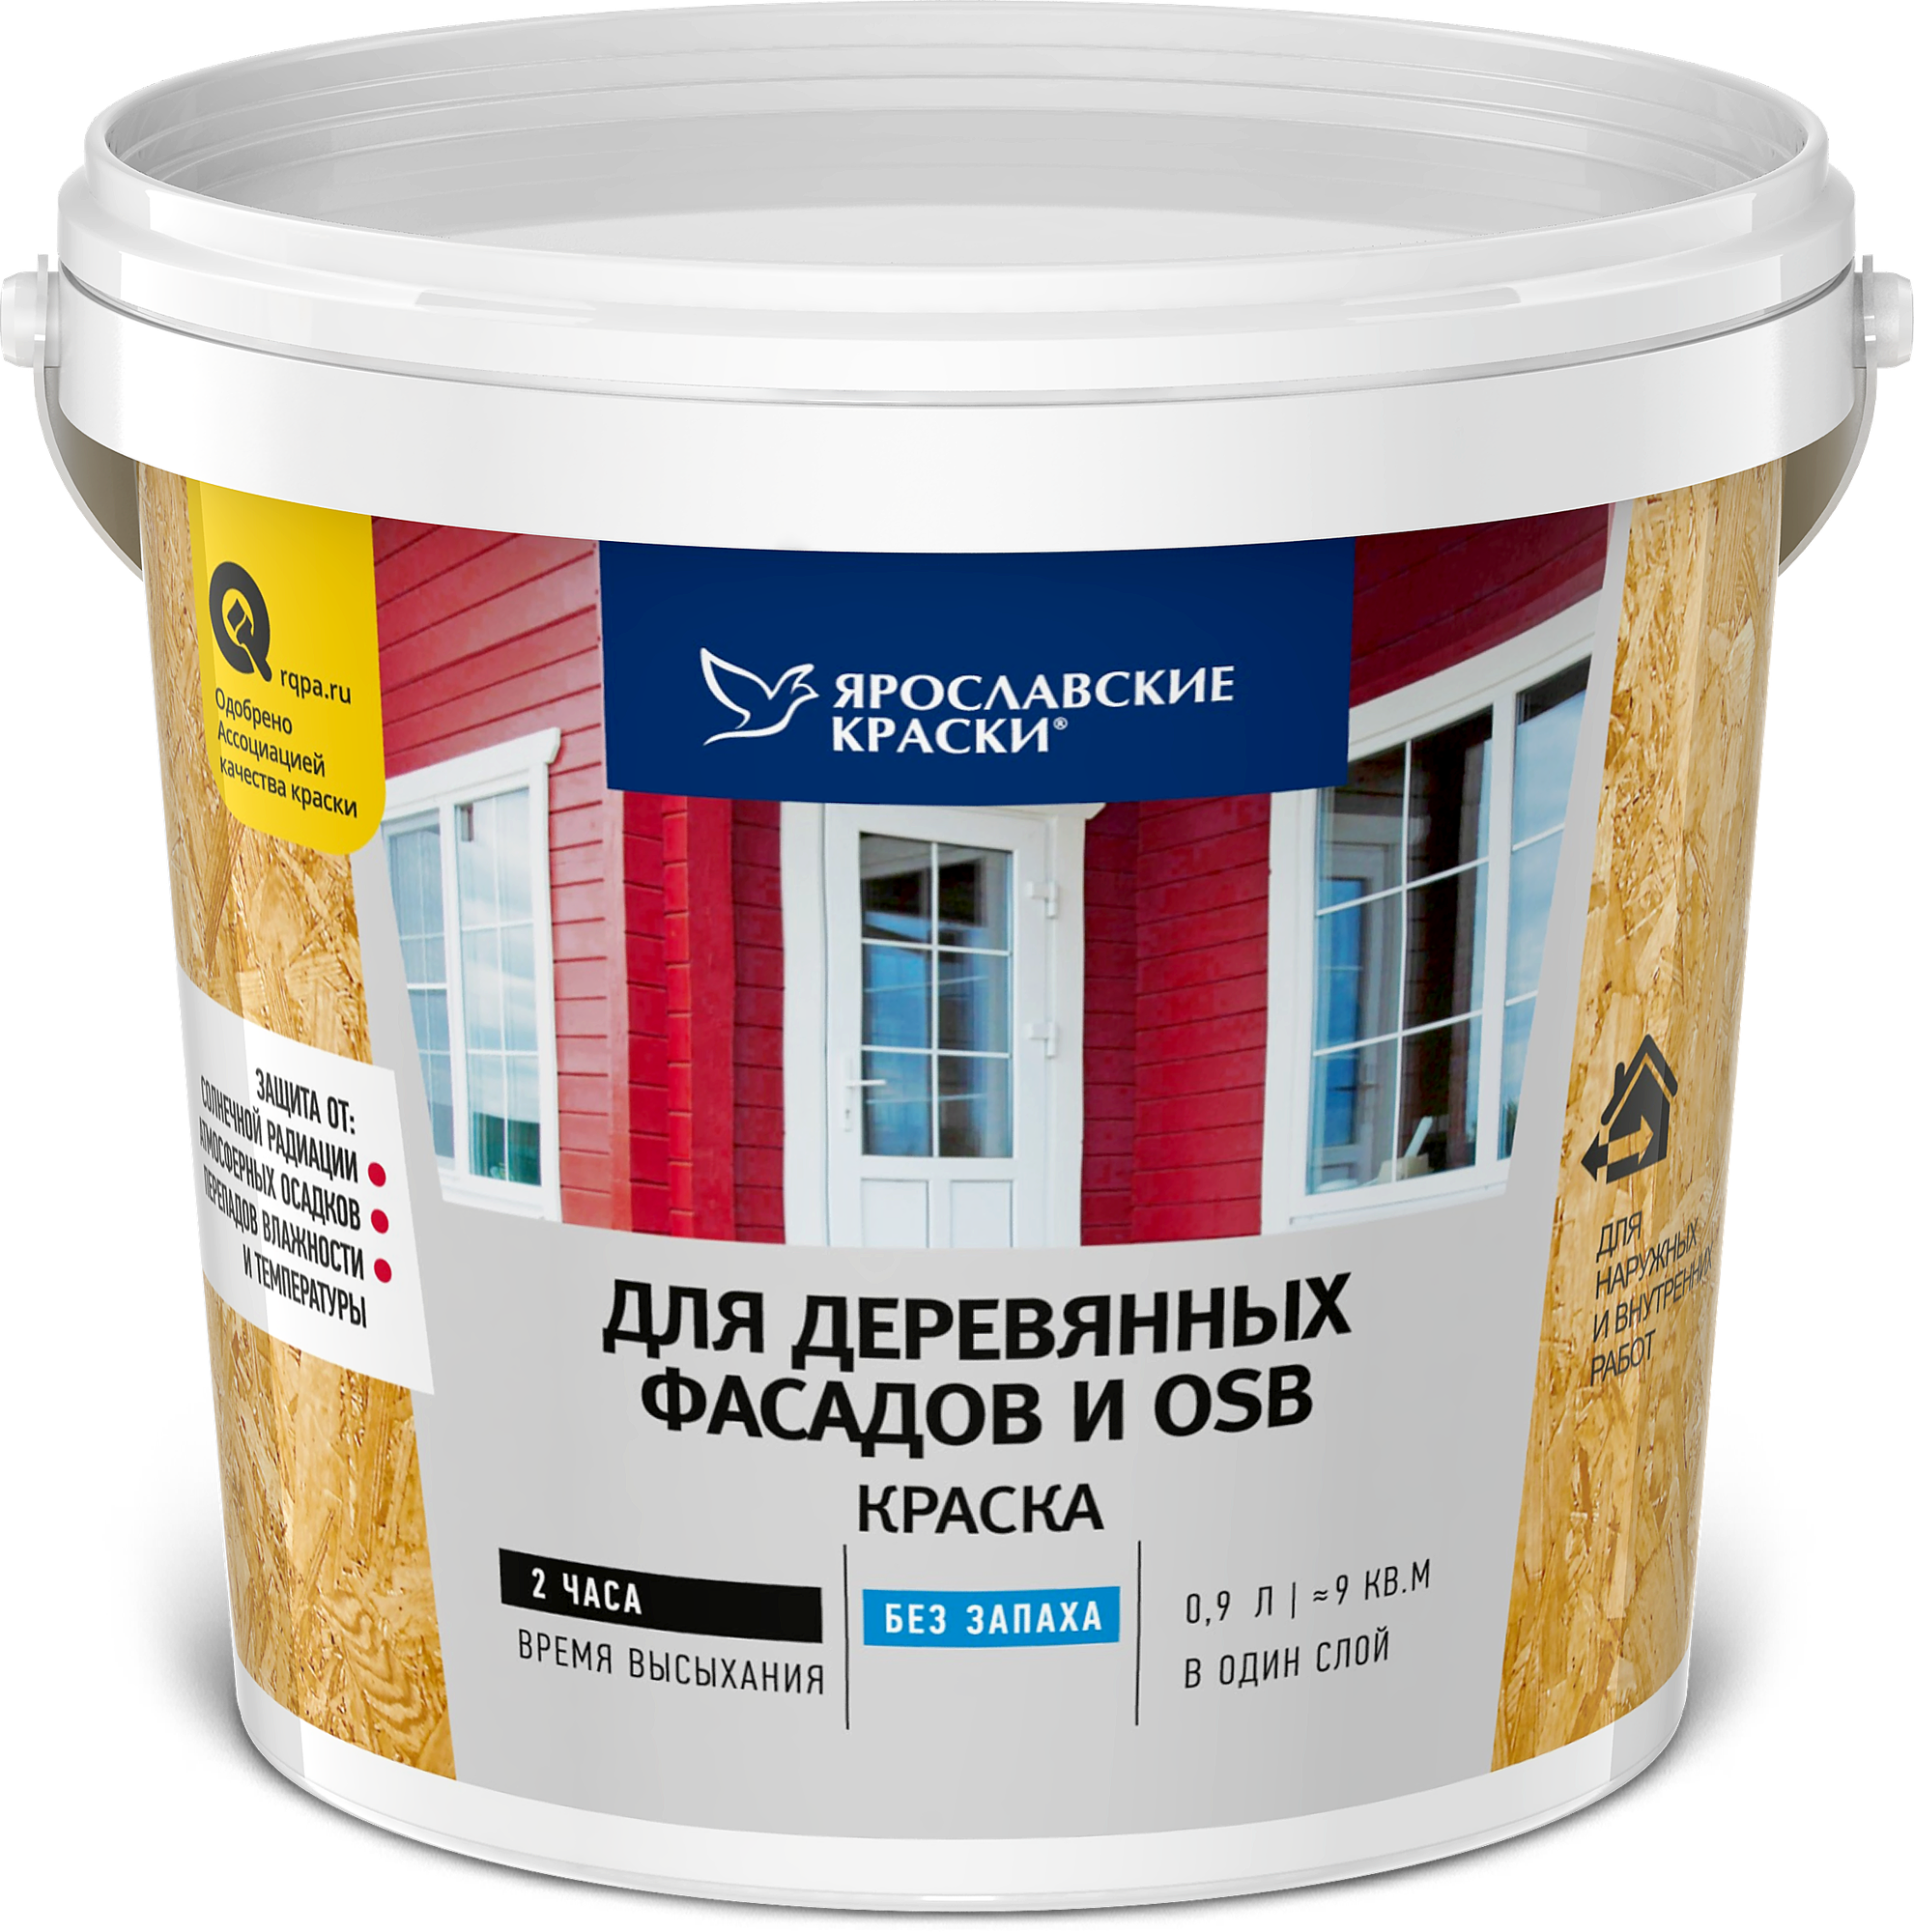 Краска акриловая Ярославские краски для деревянных фасадов и OSB